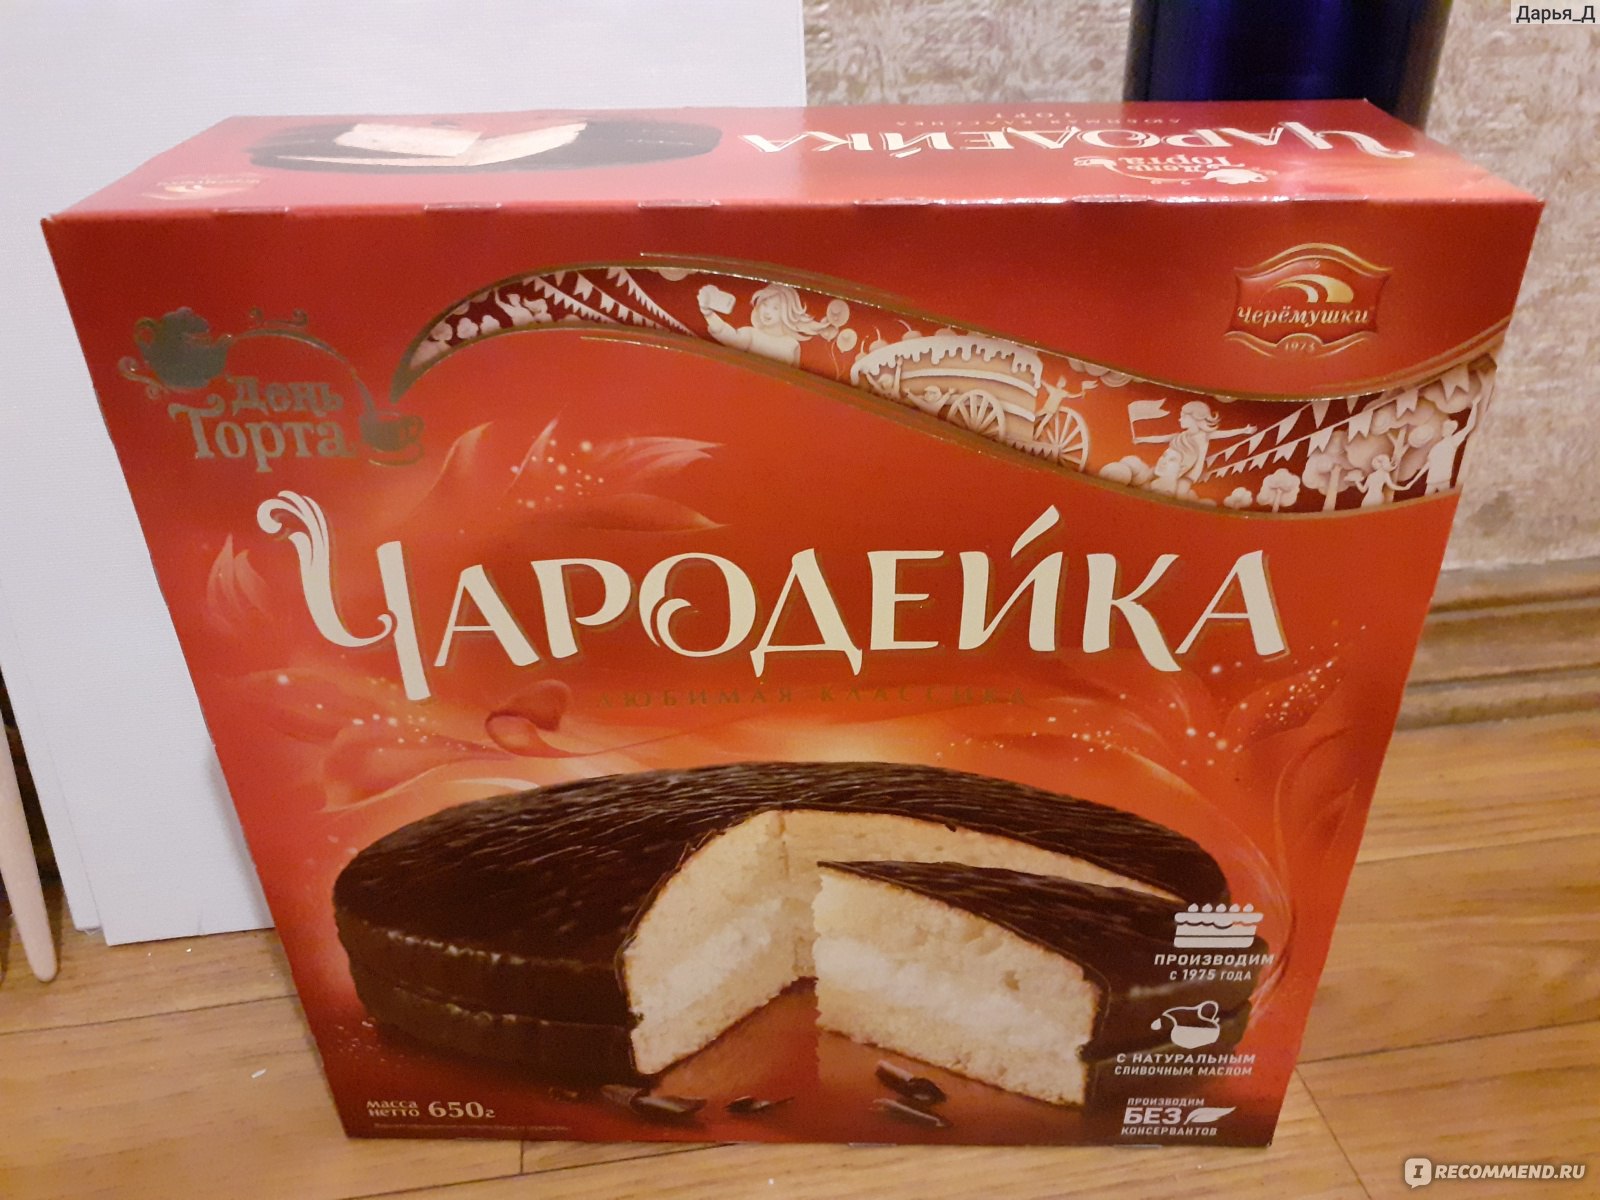 Торт Черемушки Чародейка 650 г